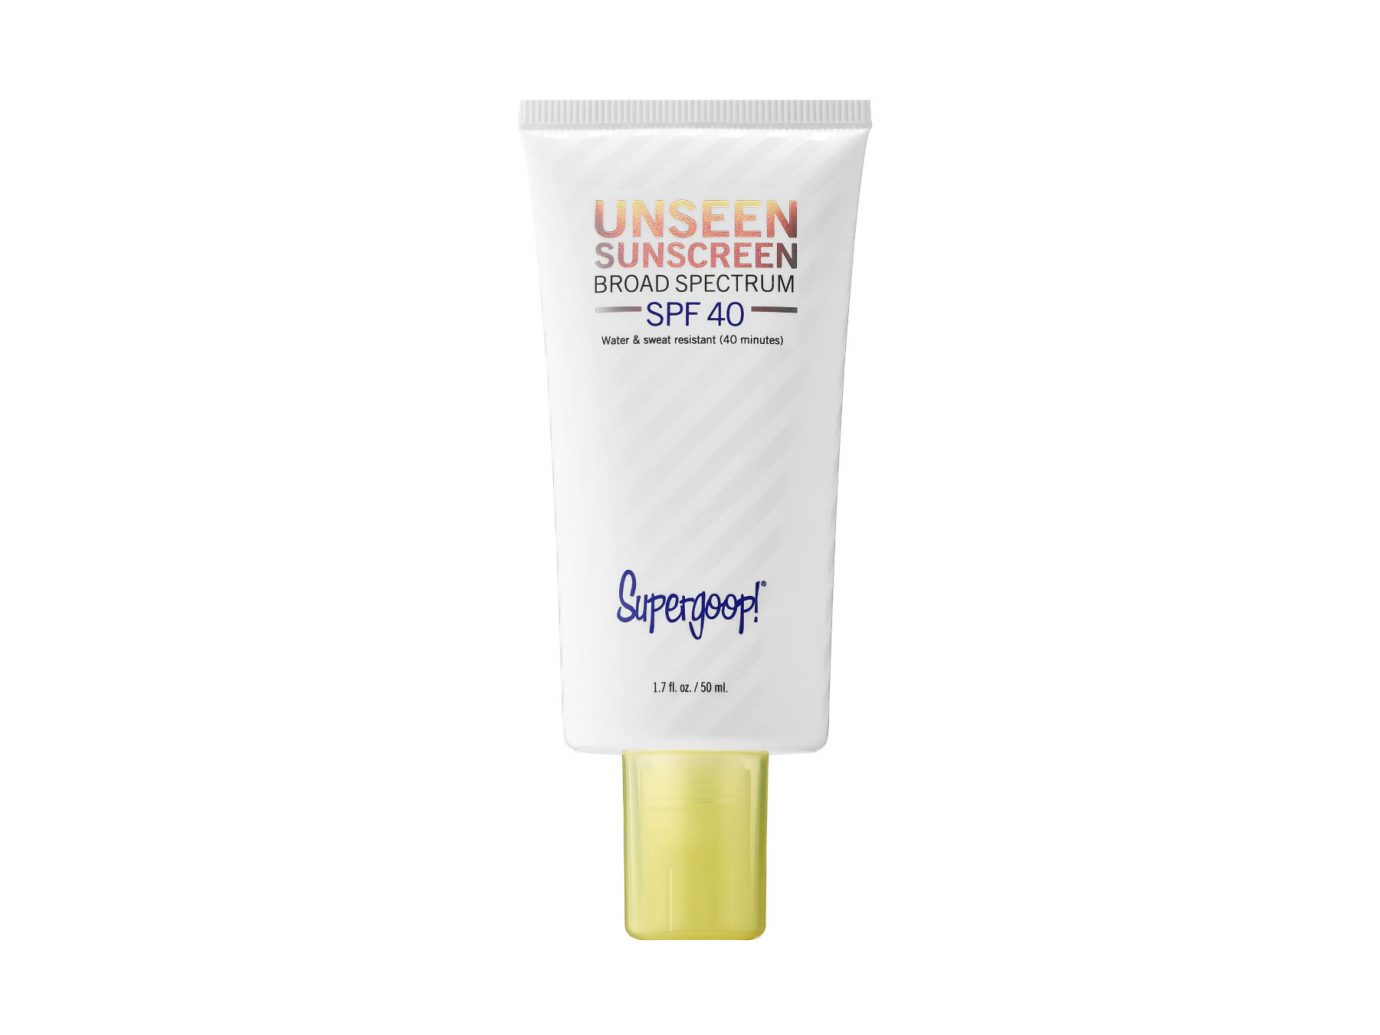 Supergoop!’s Unseen Sunscreen SPF 40